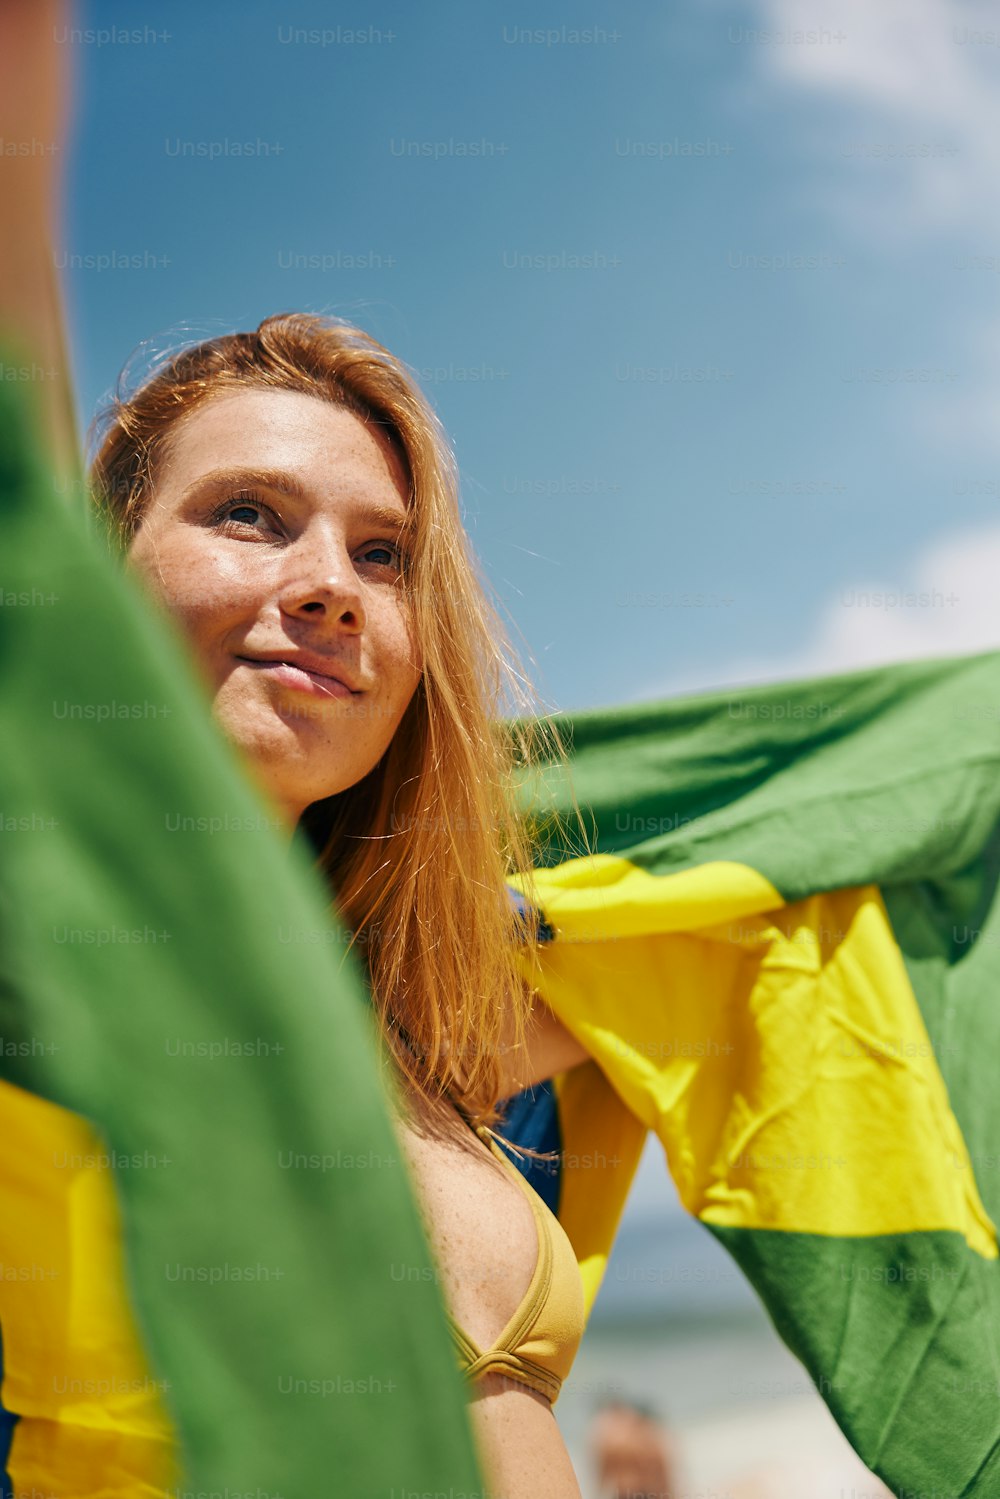 Une femme en bikini jaune tenant un drapeau vert et jaune